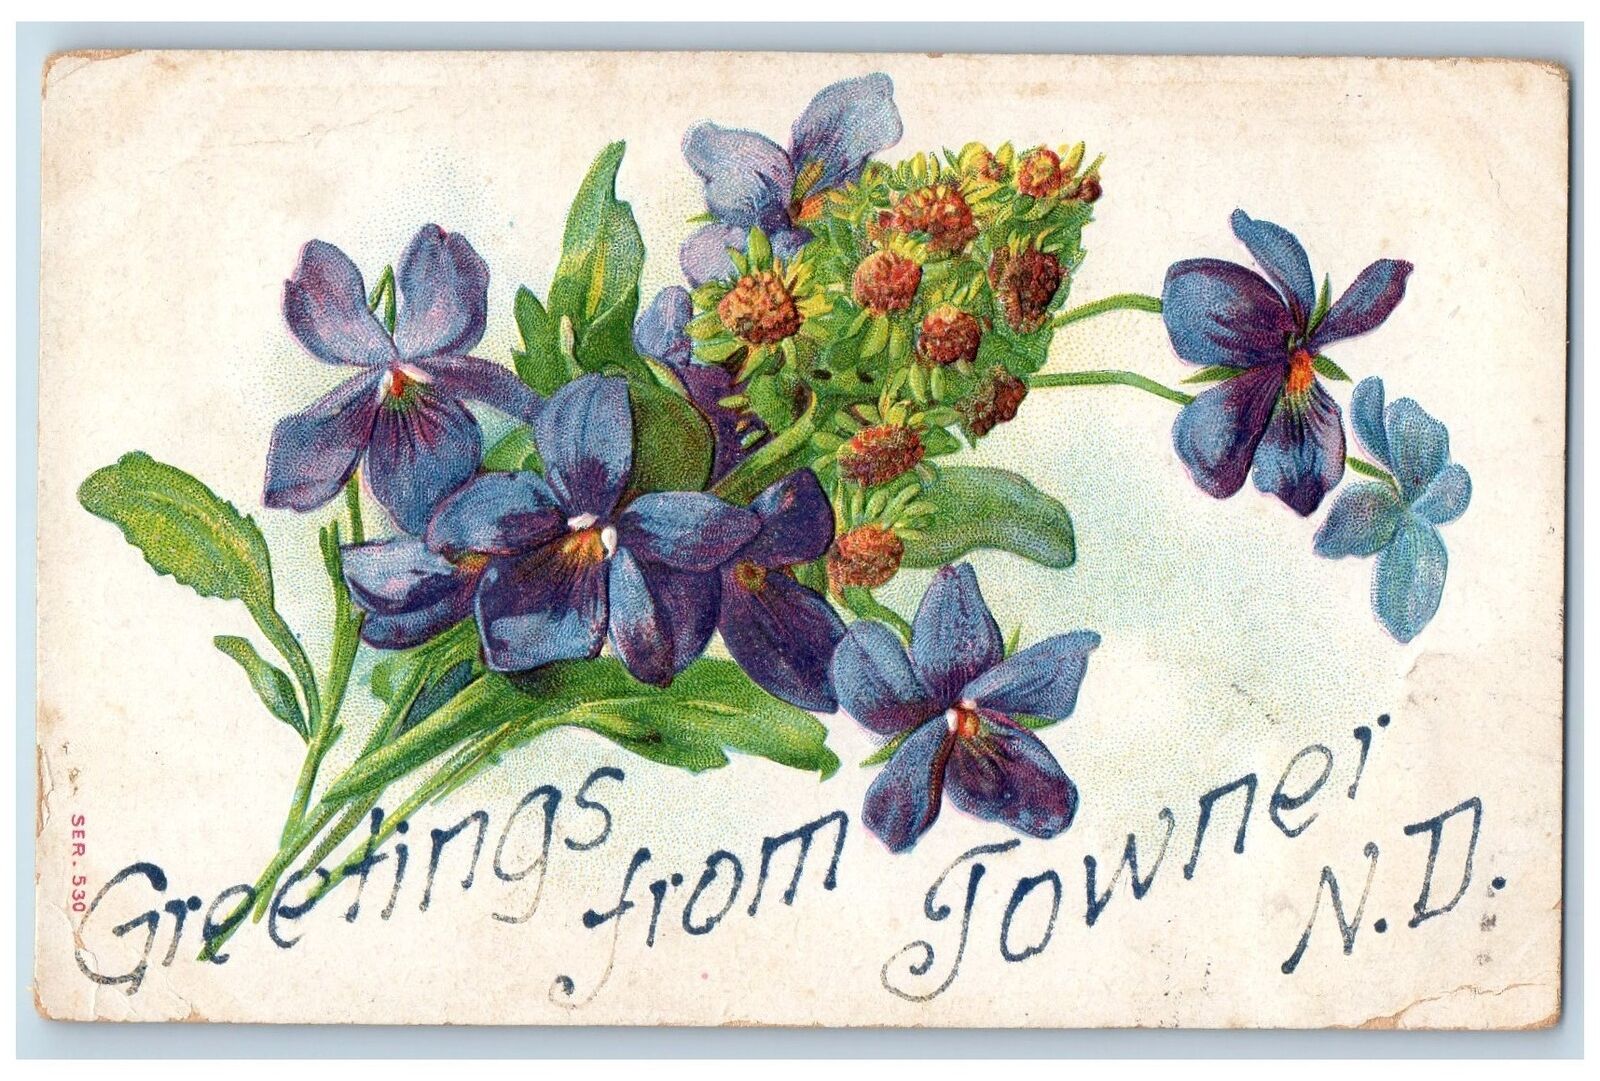 Towner North Dakota ND Postcard Greetings Embossed Flowers Leaves 1909 Antique